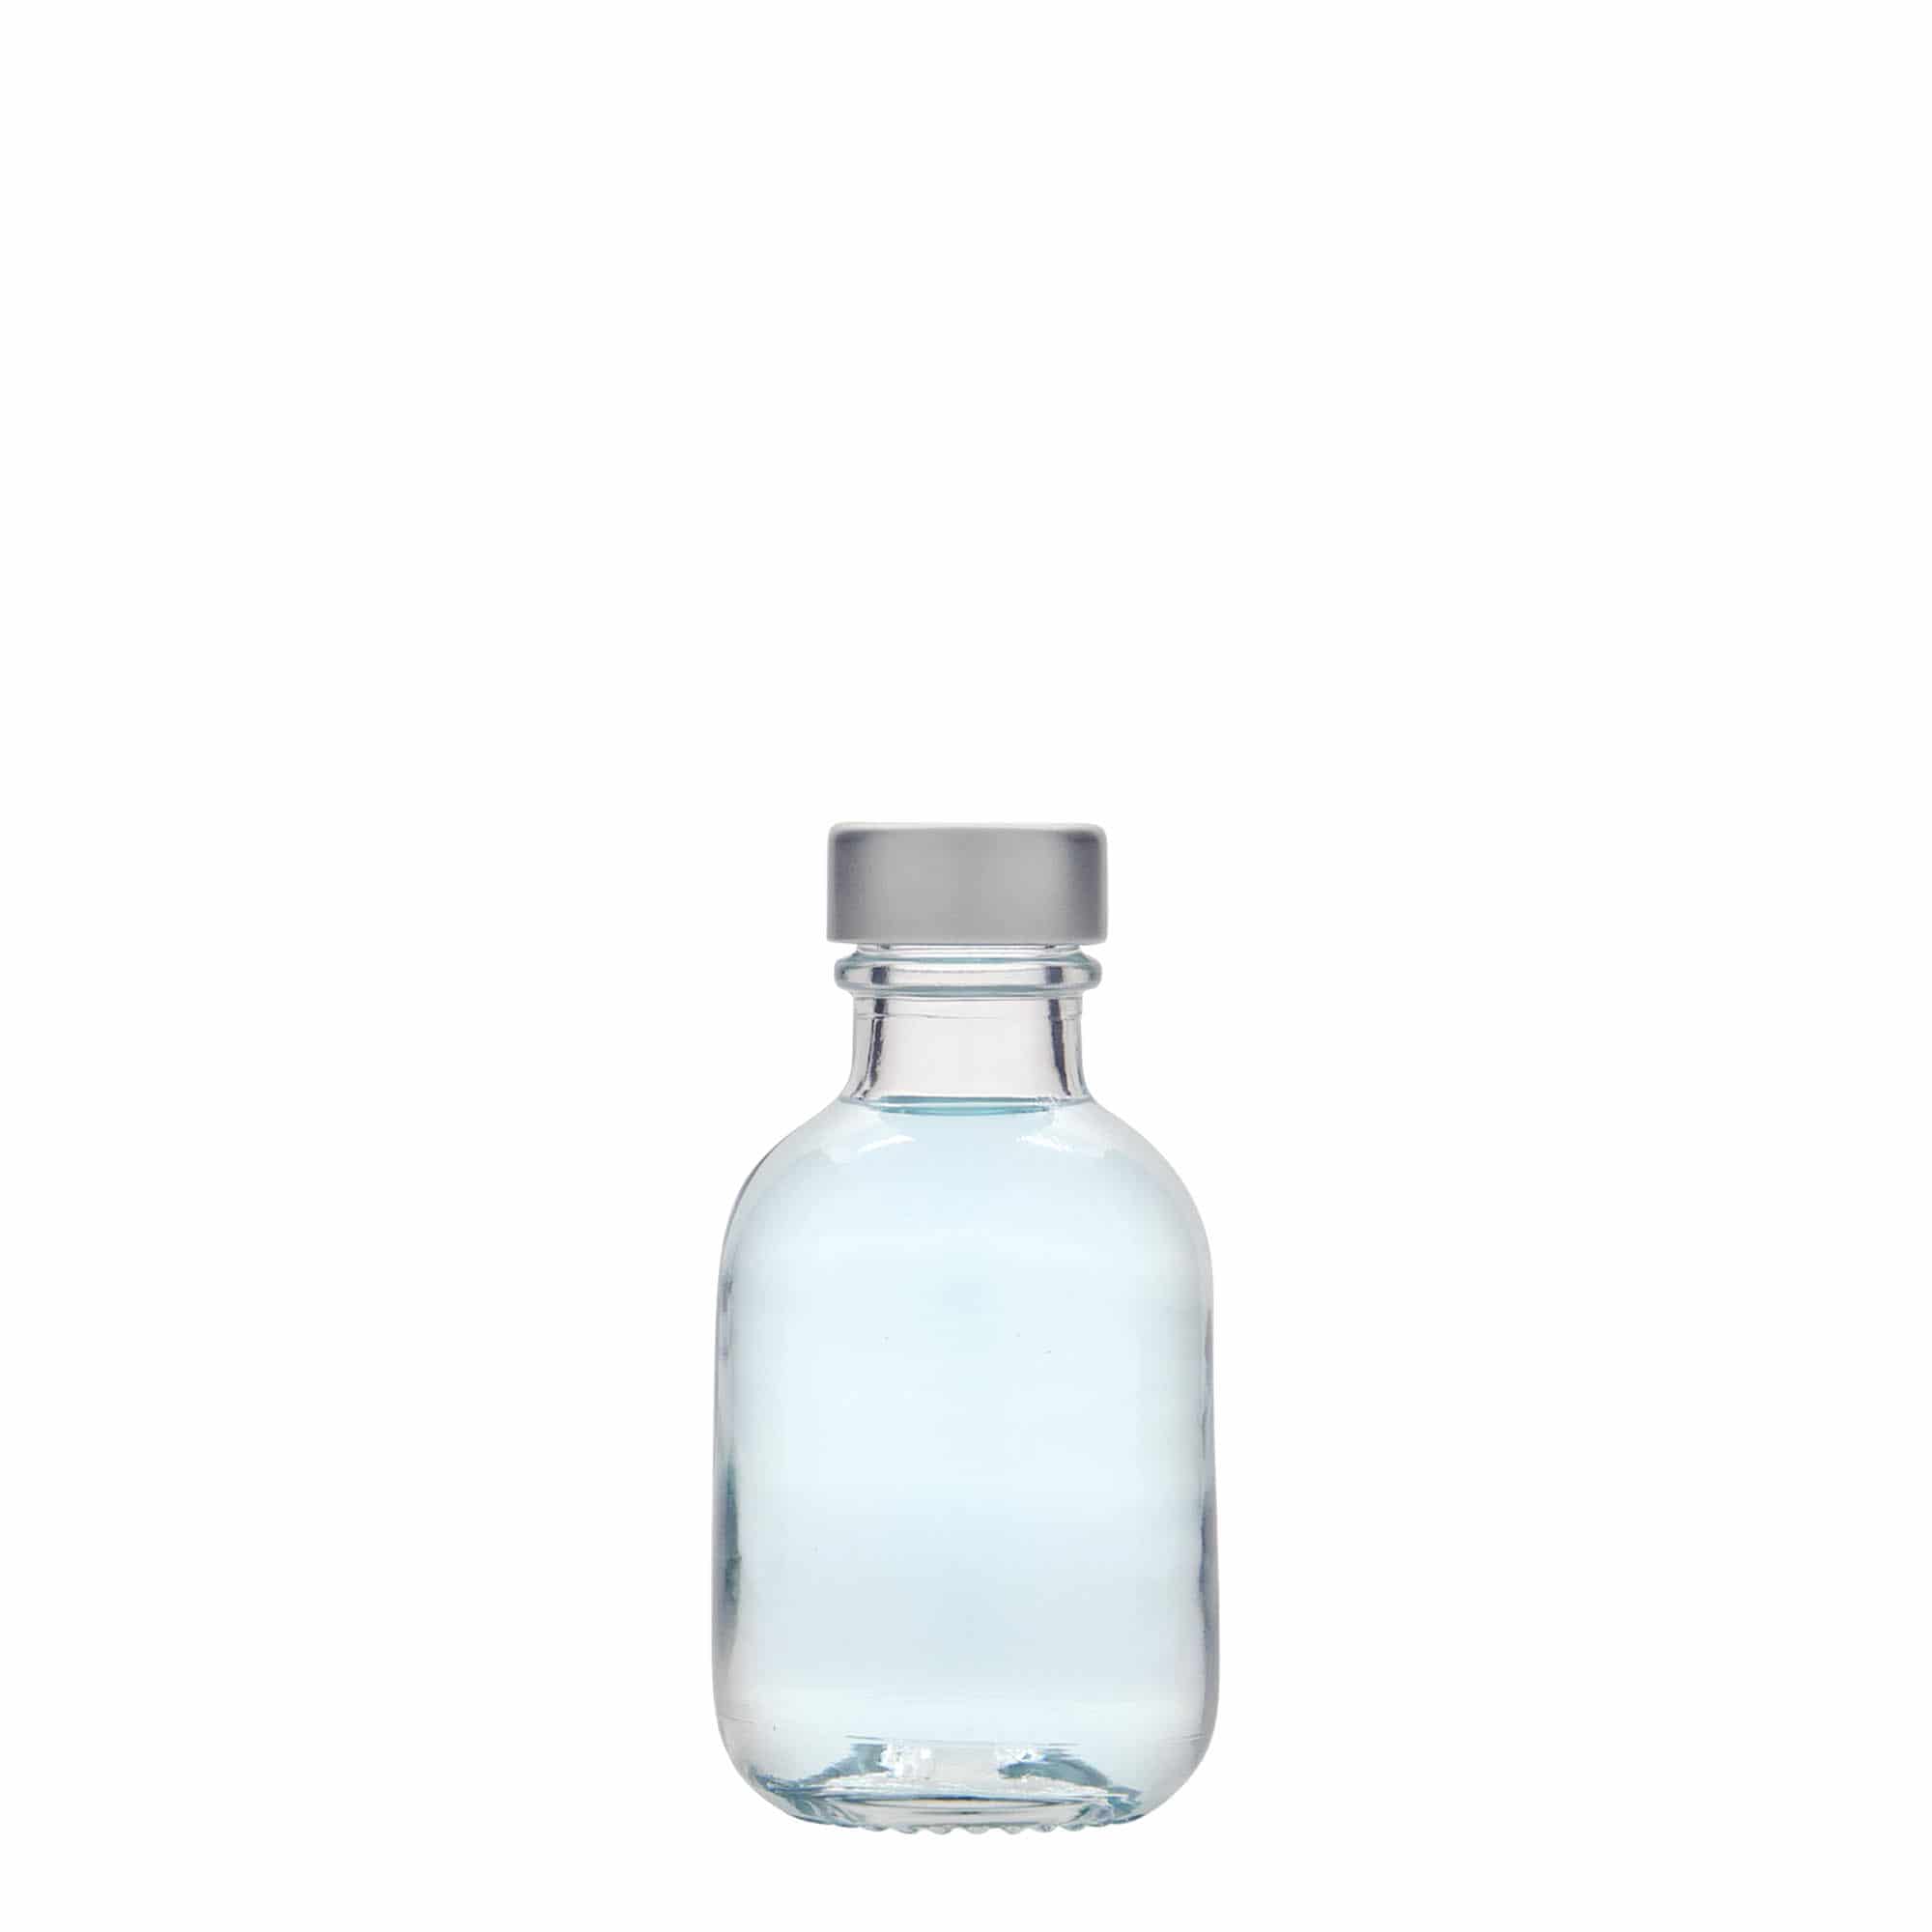 50 ml glass bottle 'Lotto', closure: GPI 22